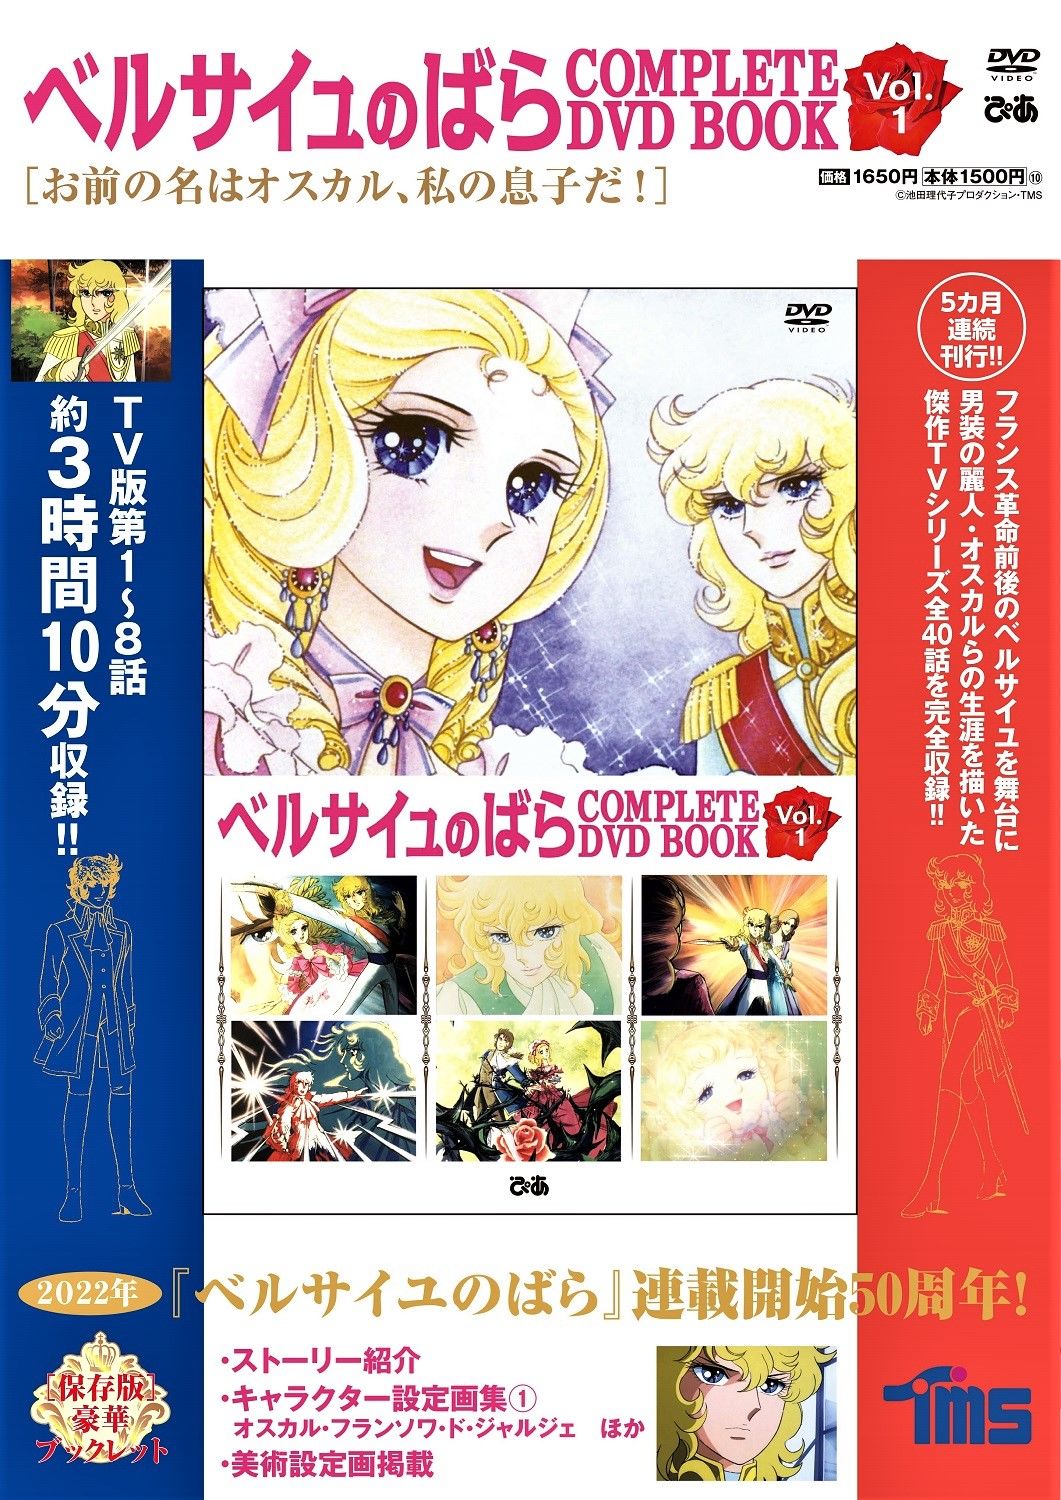 El quinto y último volumen del COMPLETE DVD BOOK, que contiene la versión del anime que comenzó a emitirse en 1979, salió a la venta el 17 de febrero de 2022. (Fotografía cortesía de PIA Corporation)